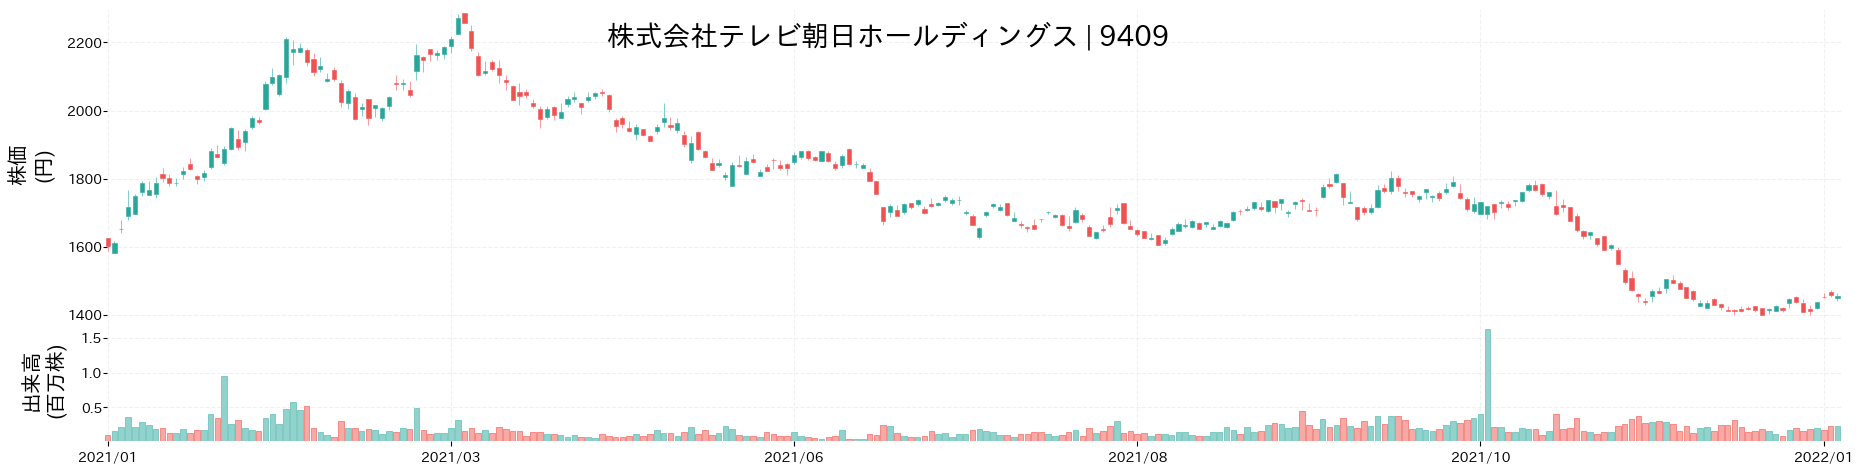 テレビ朝日ホールディングスの株価推移(2021)